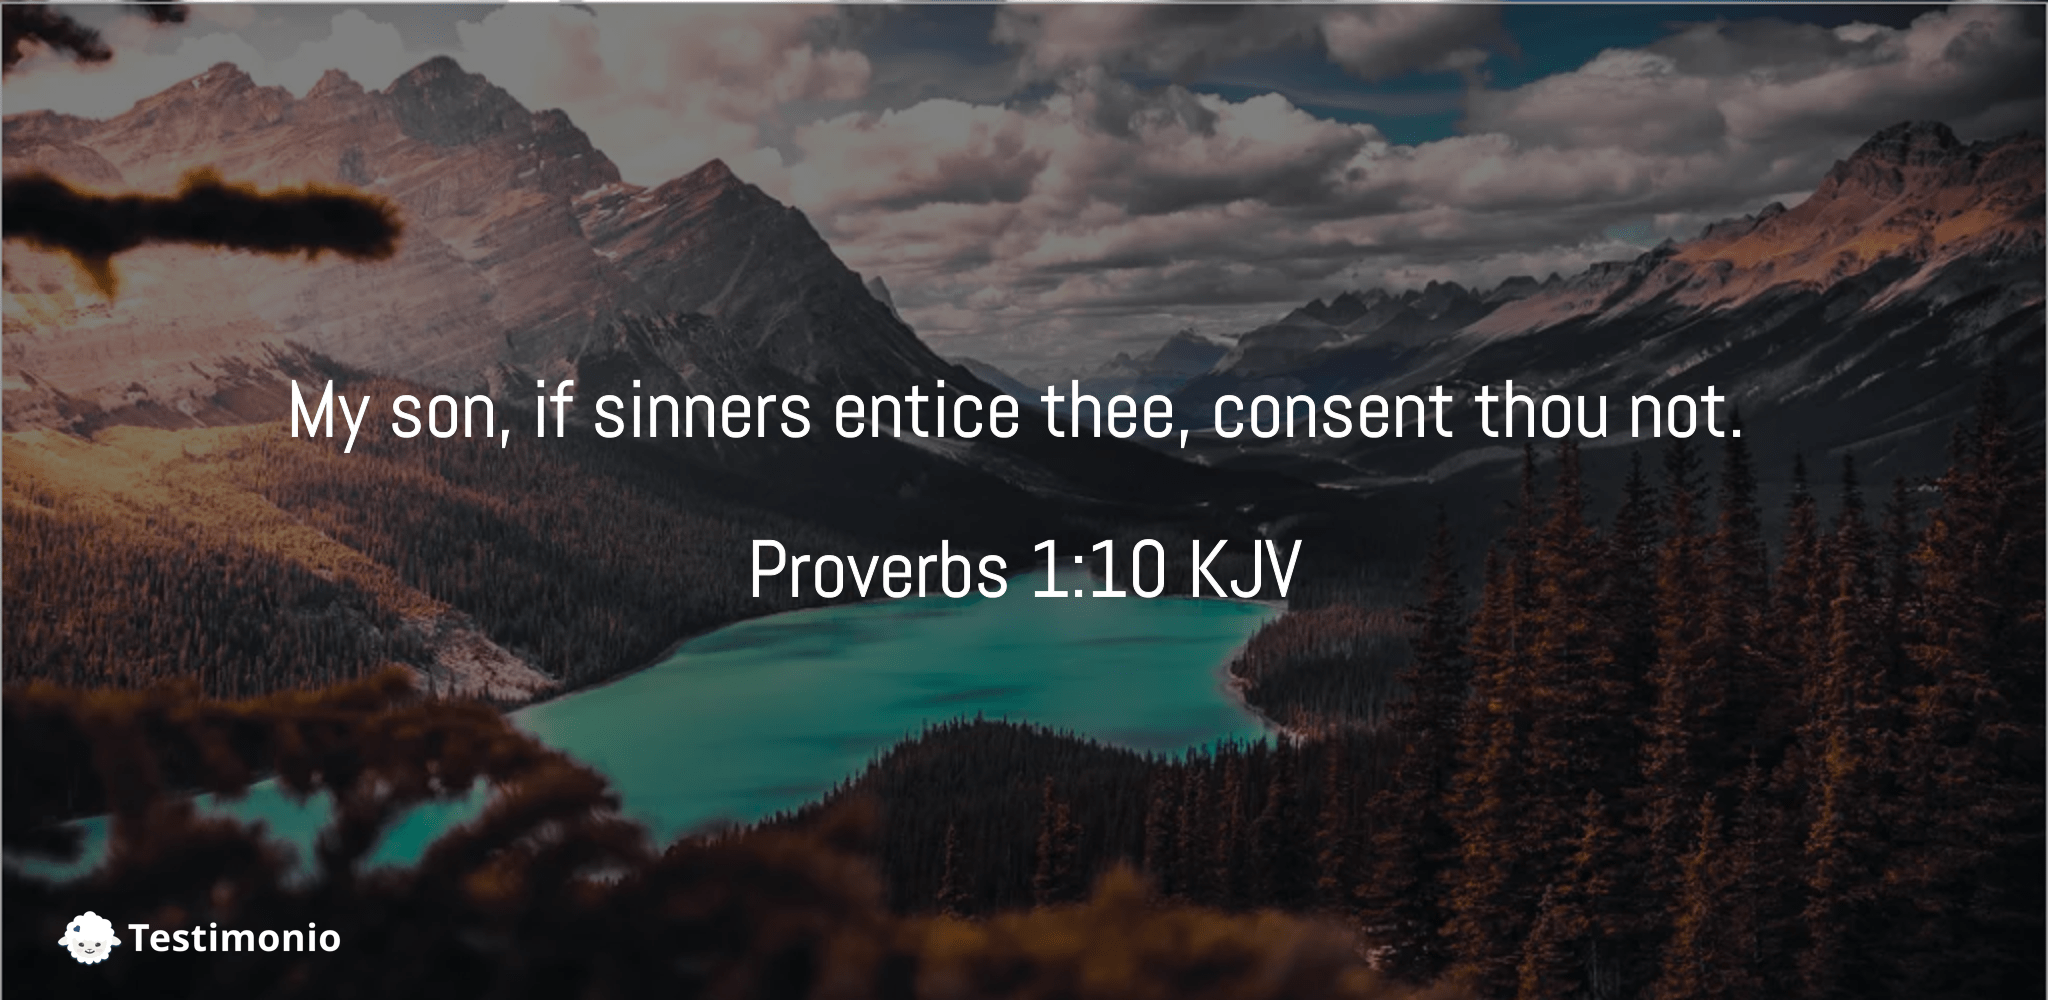 proverbs-1-10